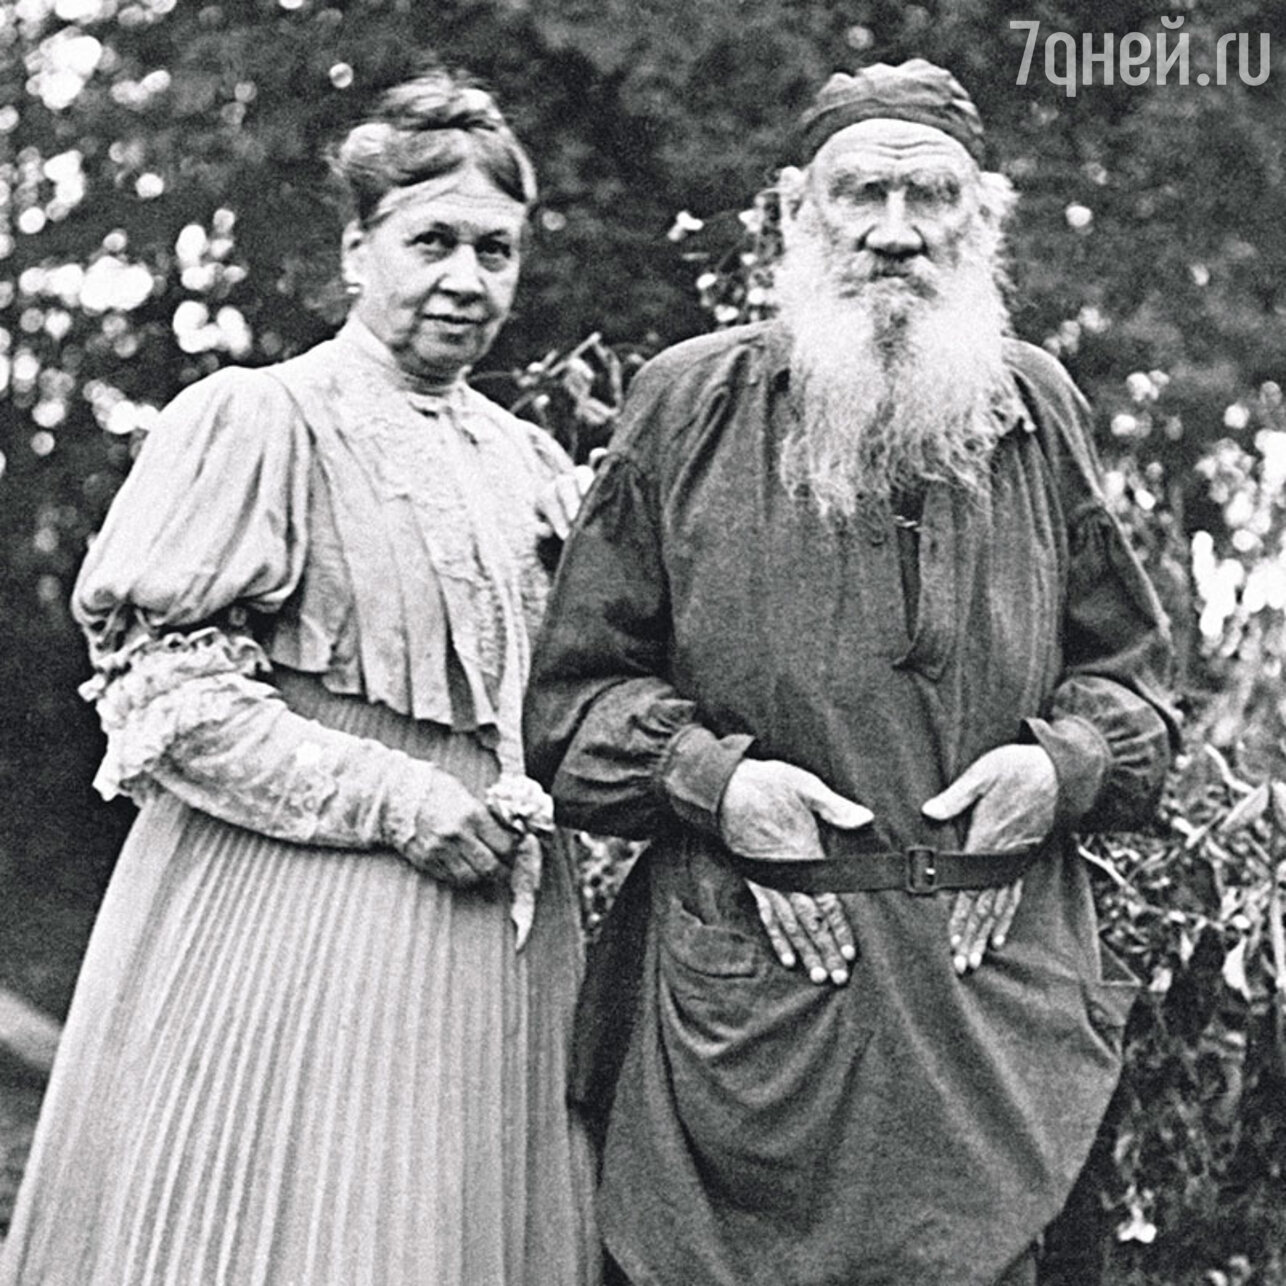 Толстой был женат. Лев толстой с женой. Лев толстой с женой в молодости.